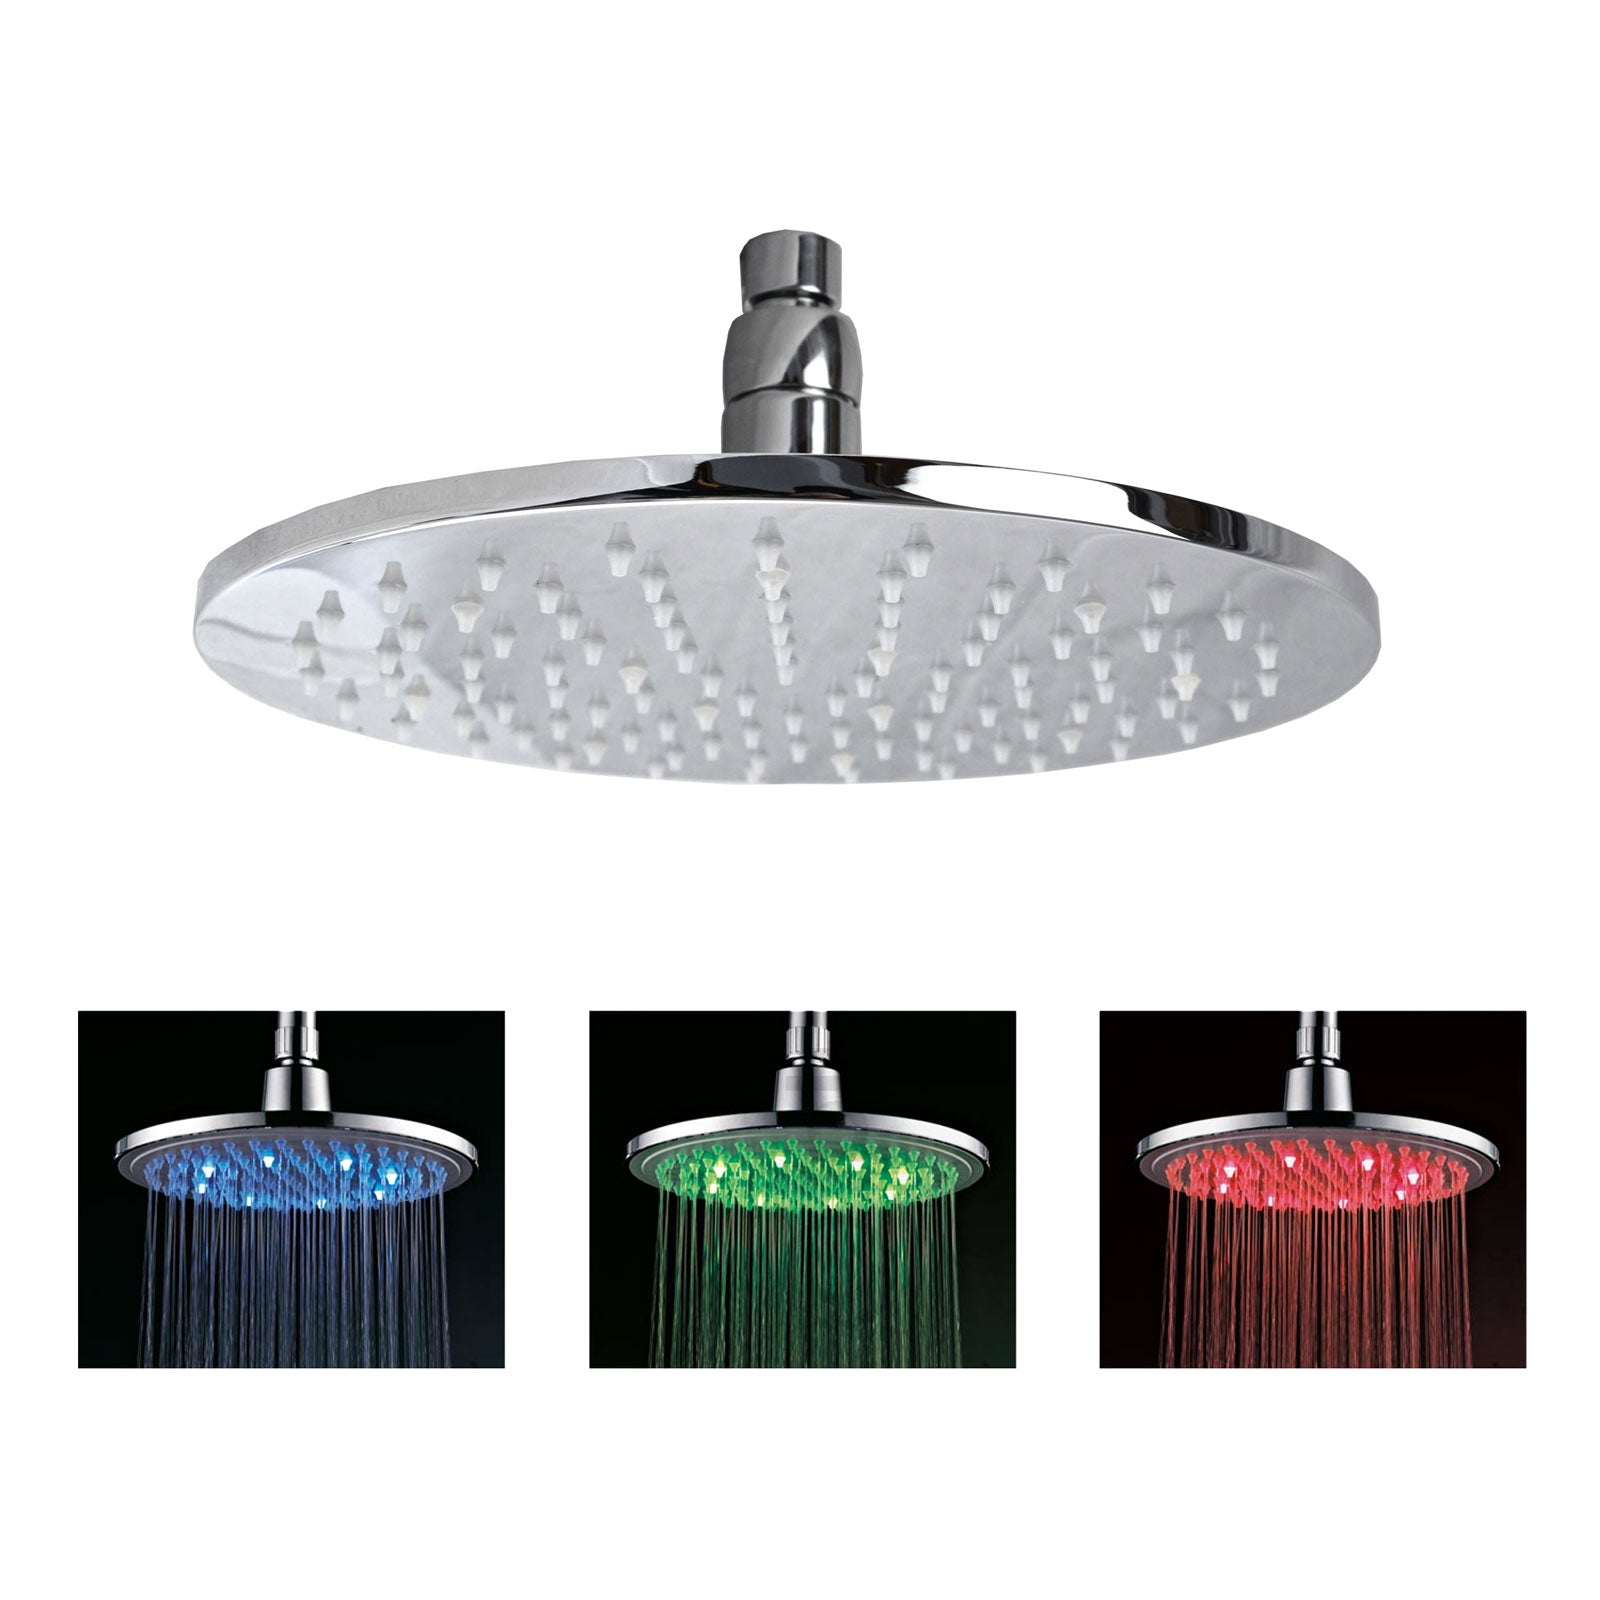 8" Round Bathroom Chrome 3 Colour Led Rainfall Stainless Steel Shower Head